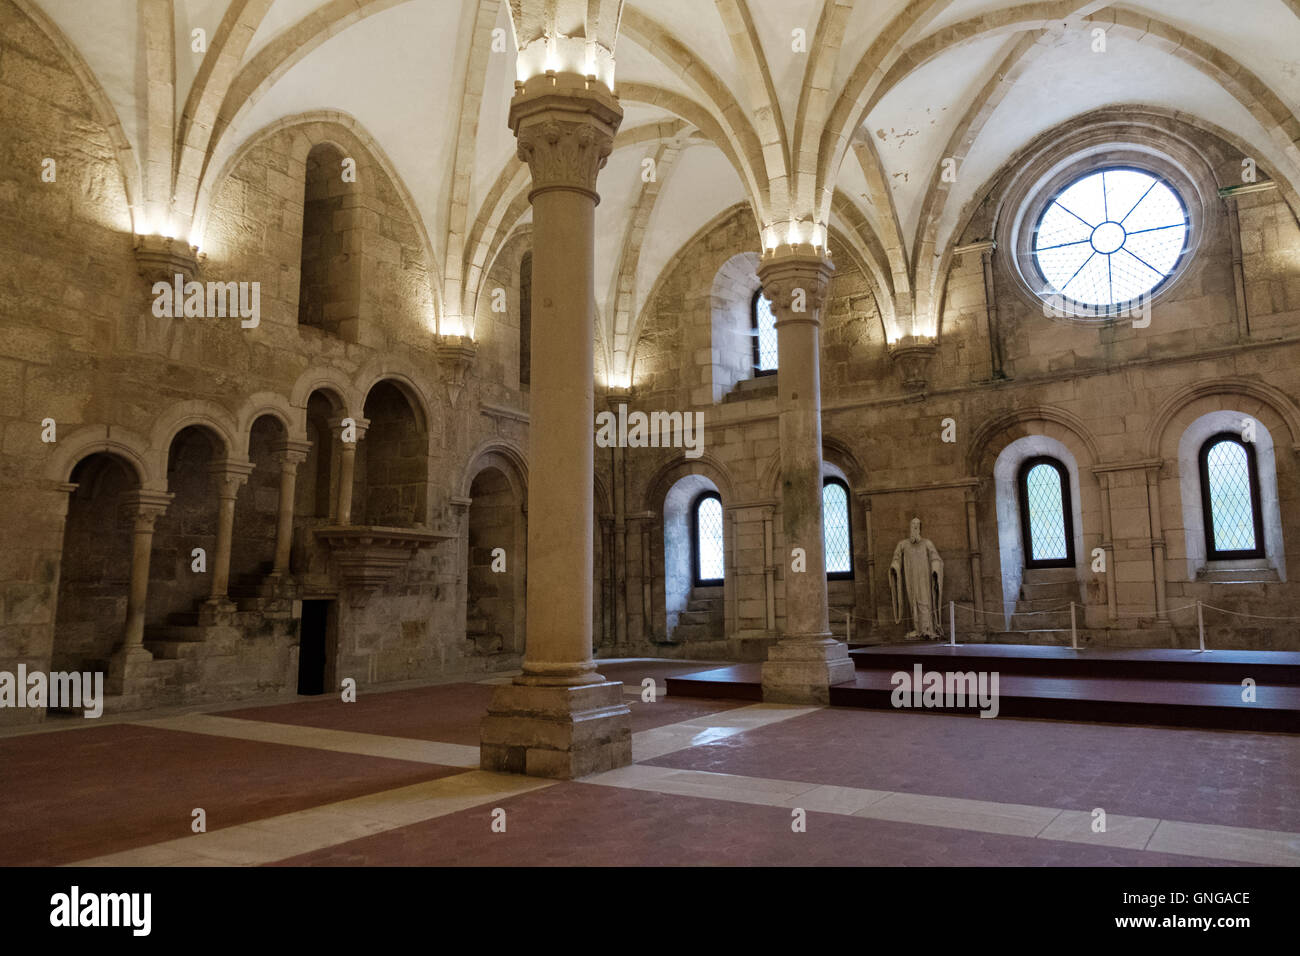 El refectorio del monasterio de Alcobaça, Portugal, en el que los monjes tenían sus comidas cada día. Foto de stock